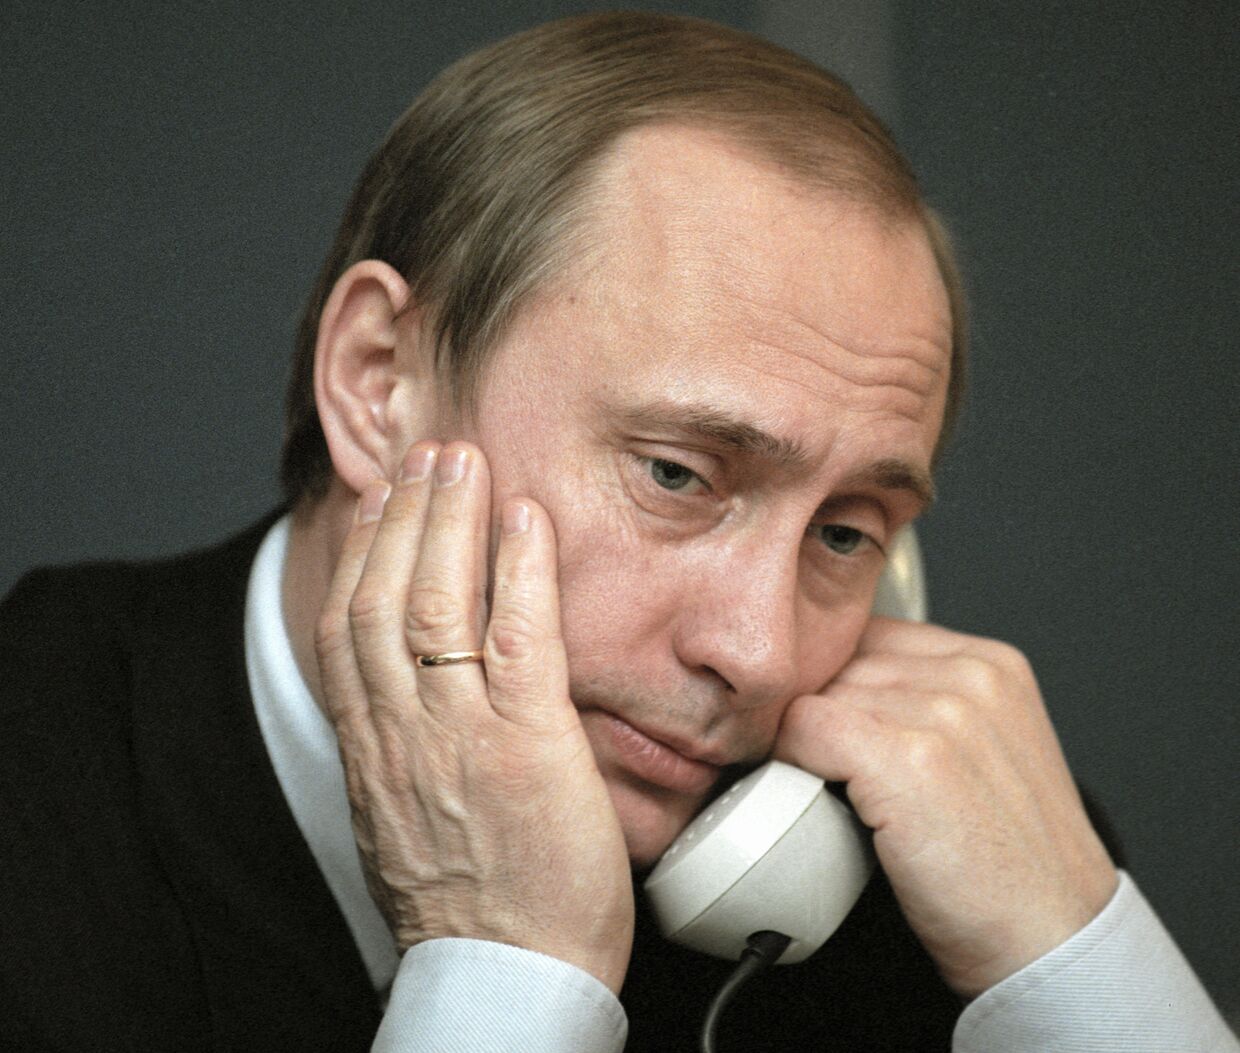 И. о. Президента РФ Владимир Путин